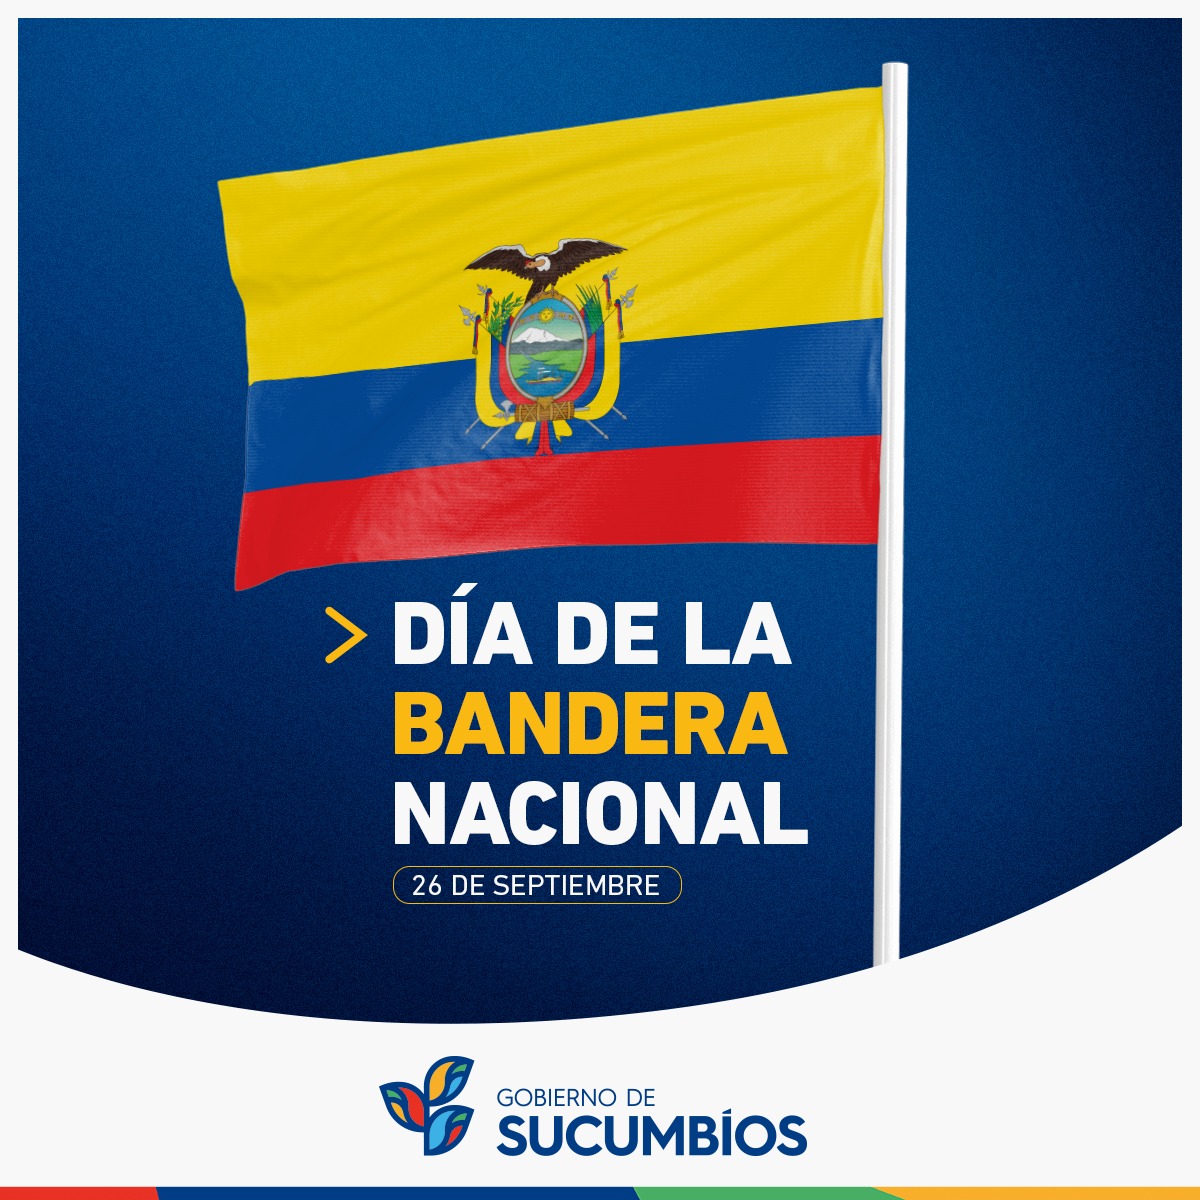 🇪🇨🫡// Hoy los ecuatorianos celebramos 126 años del Pabellón Nacional, el Gobierno de Sucumbíos rinde homenaje a este símbolo patrio con orgullo y respeto.

#AmadoChávezPrefecto
#ResponsabilidadYcompromiso
#VivirMejor